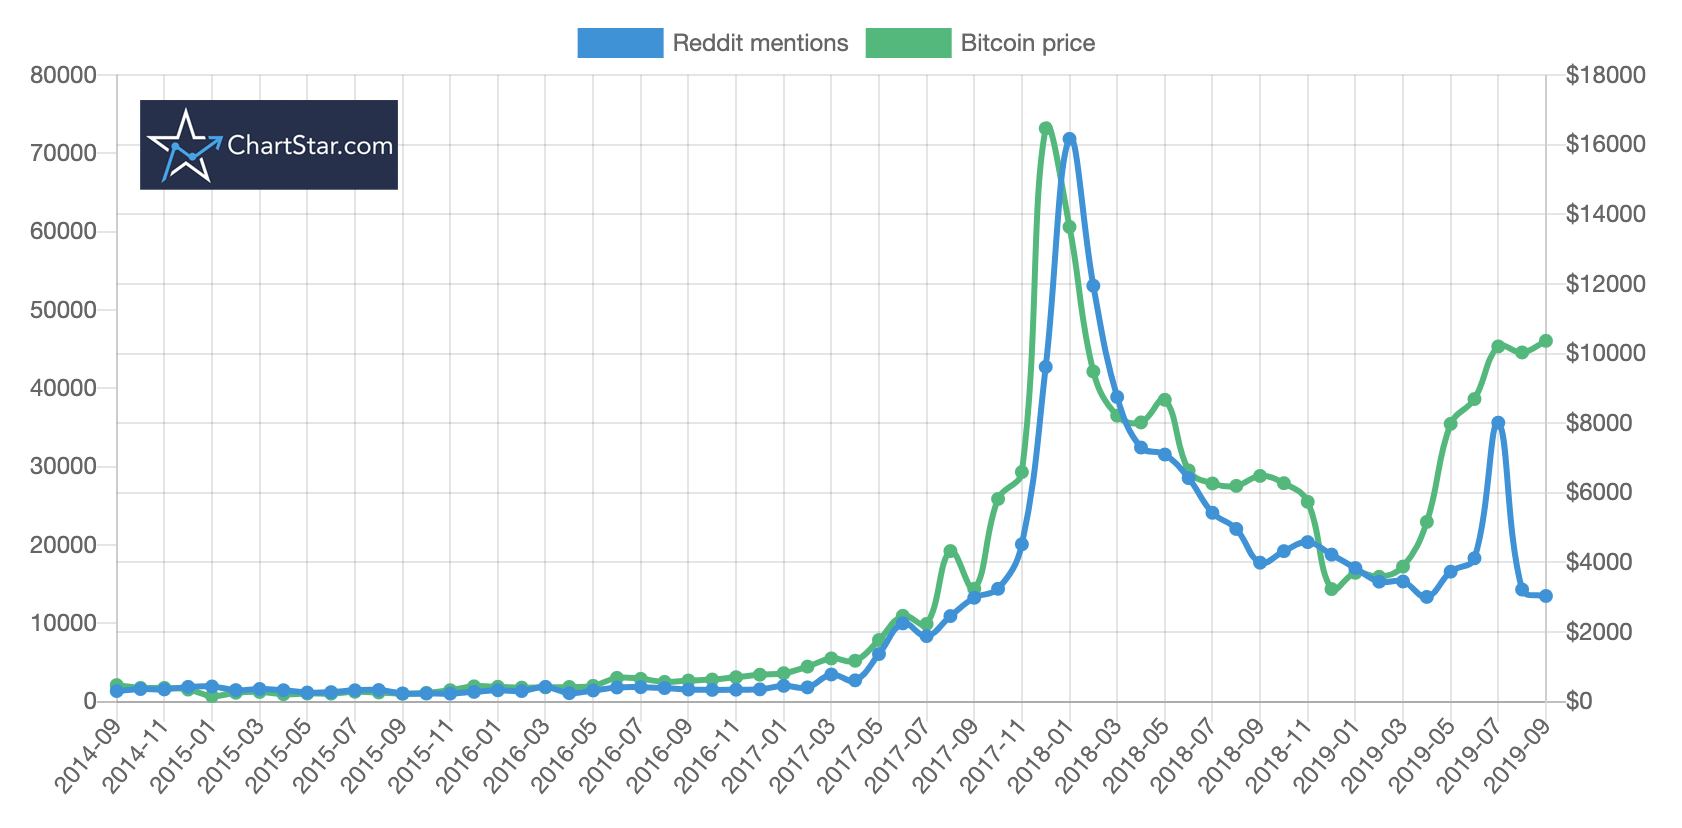 bitcoin price vs reddit mentions